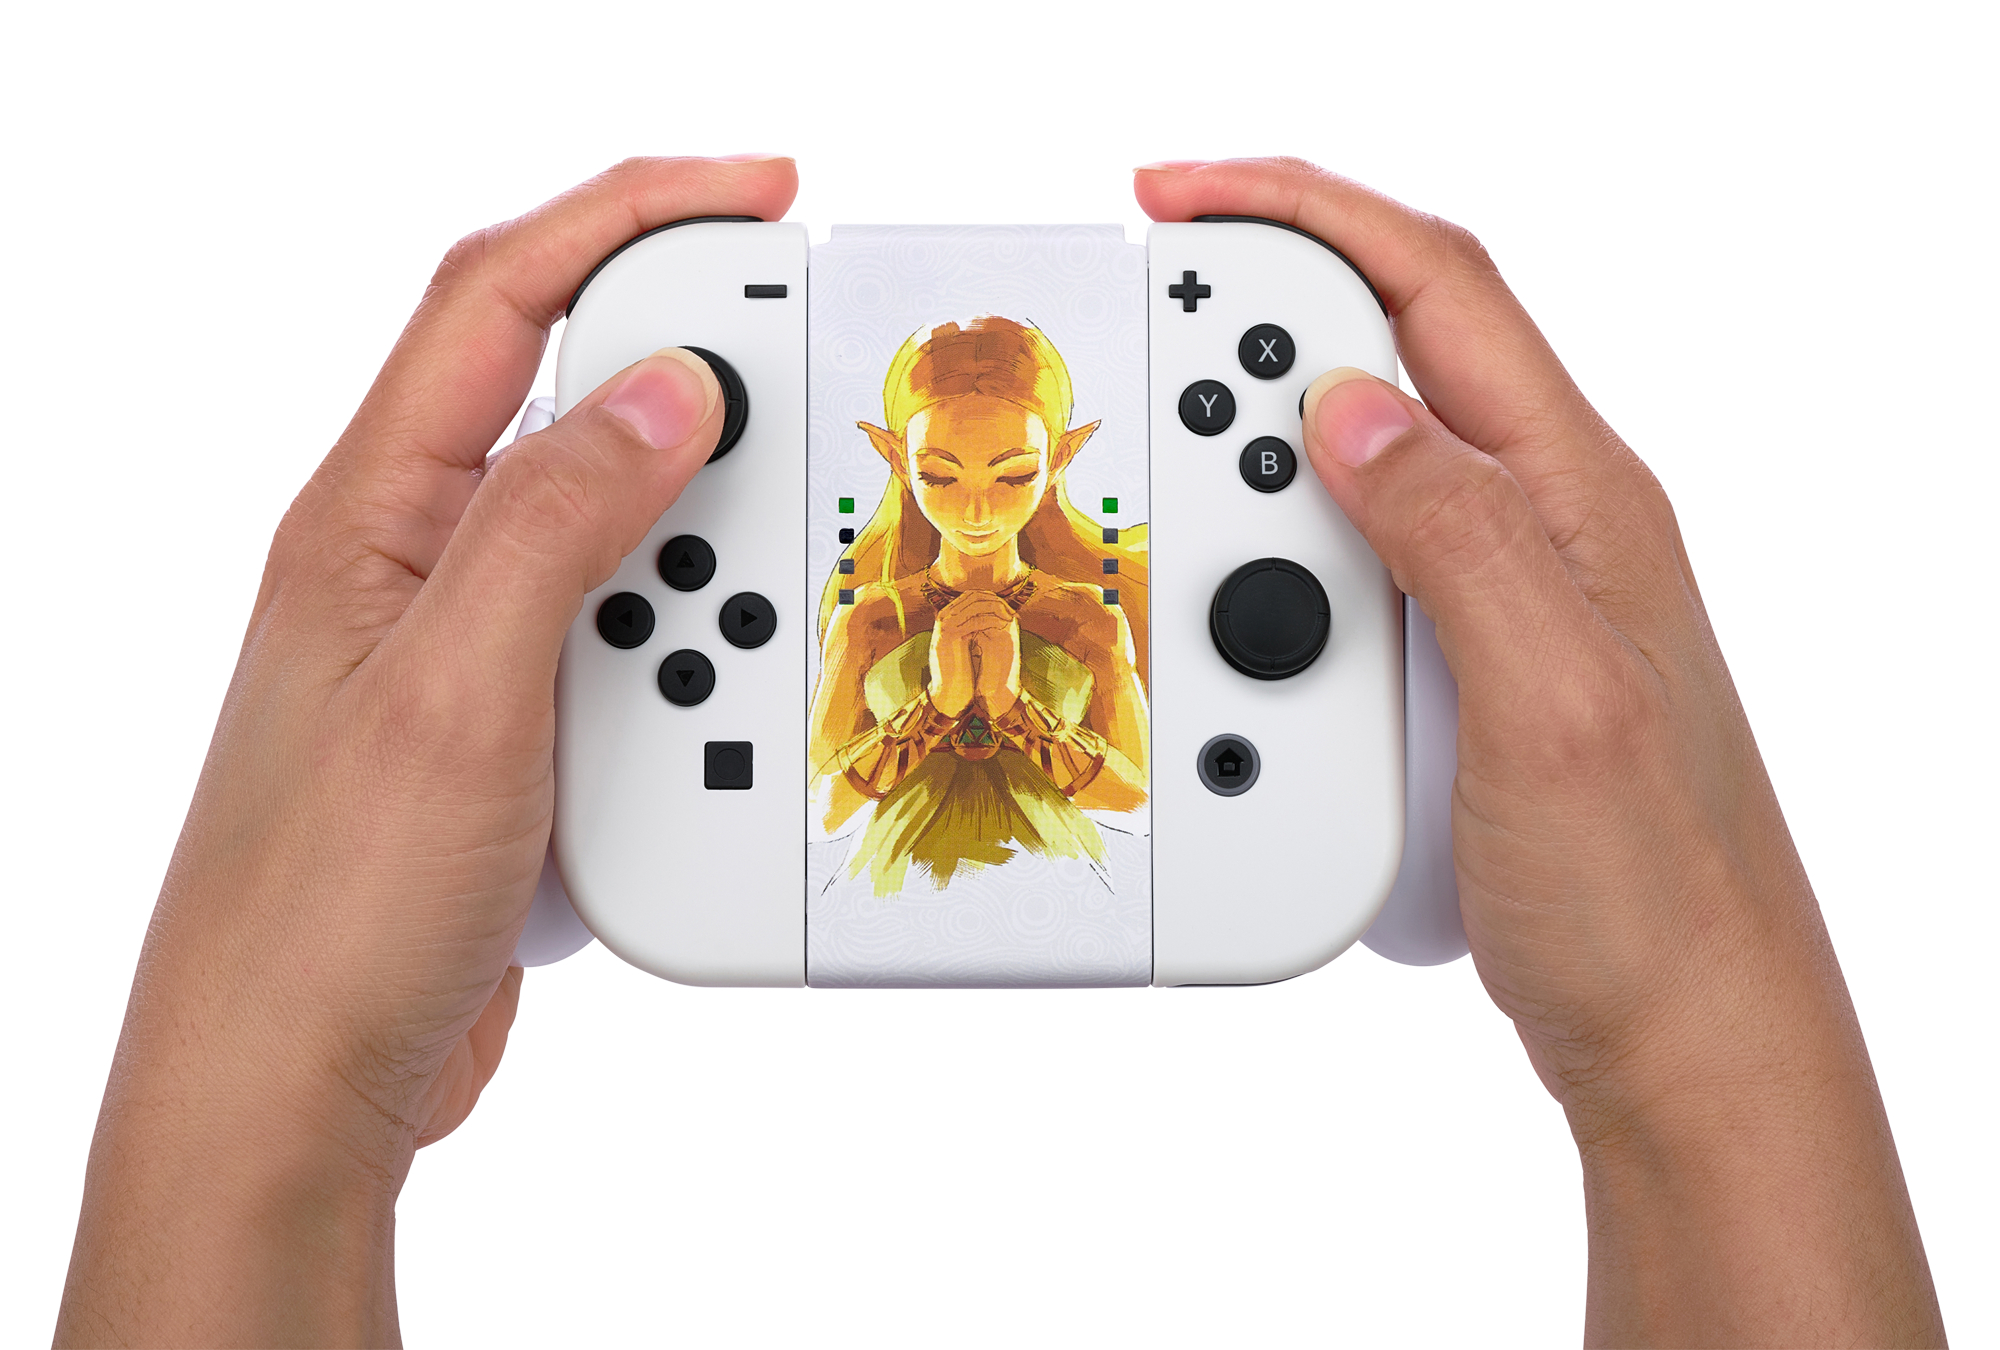 Joy-Con-Komfortgriff - Gaming-Zubehör, POWERA Princess Mehrfarbig Switch Zelda, für Nintendo